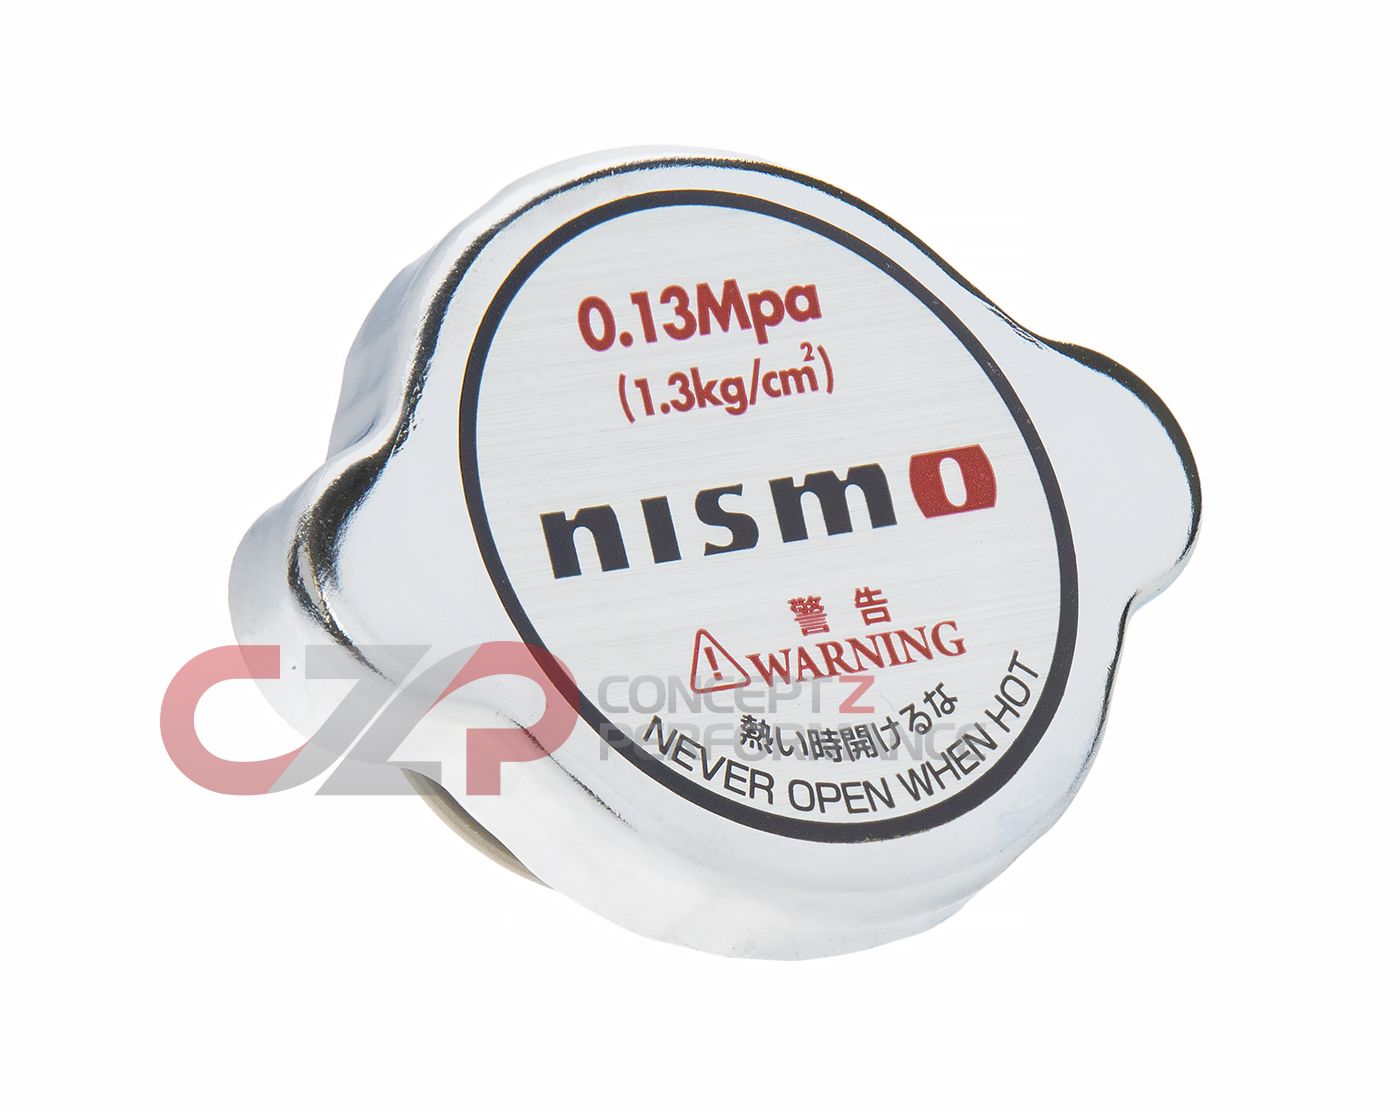 Nismo 1.3 kg/cm² Bar Radiator Cap (Replaces 21430-RS012)